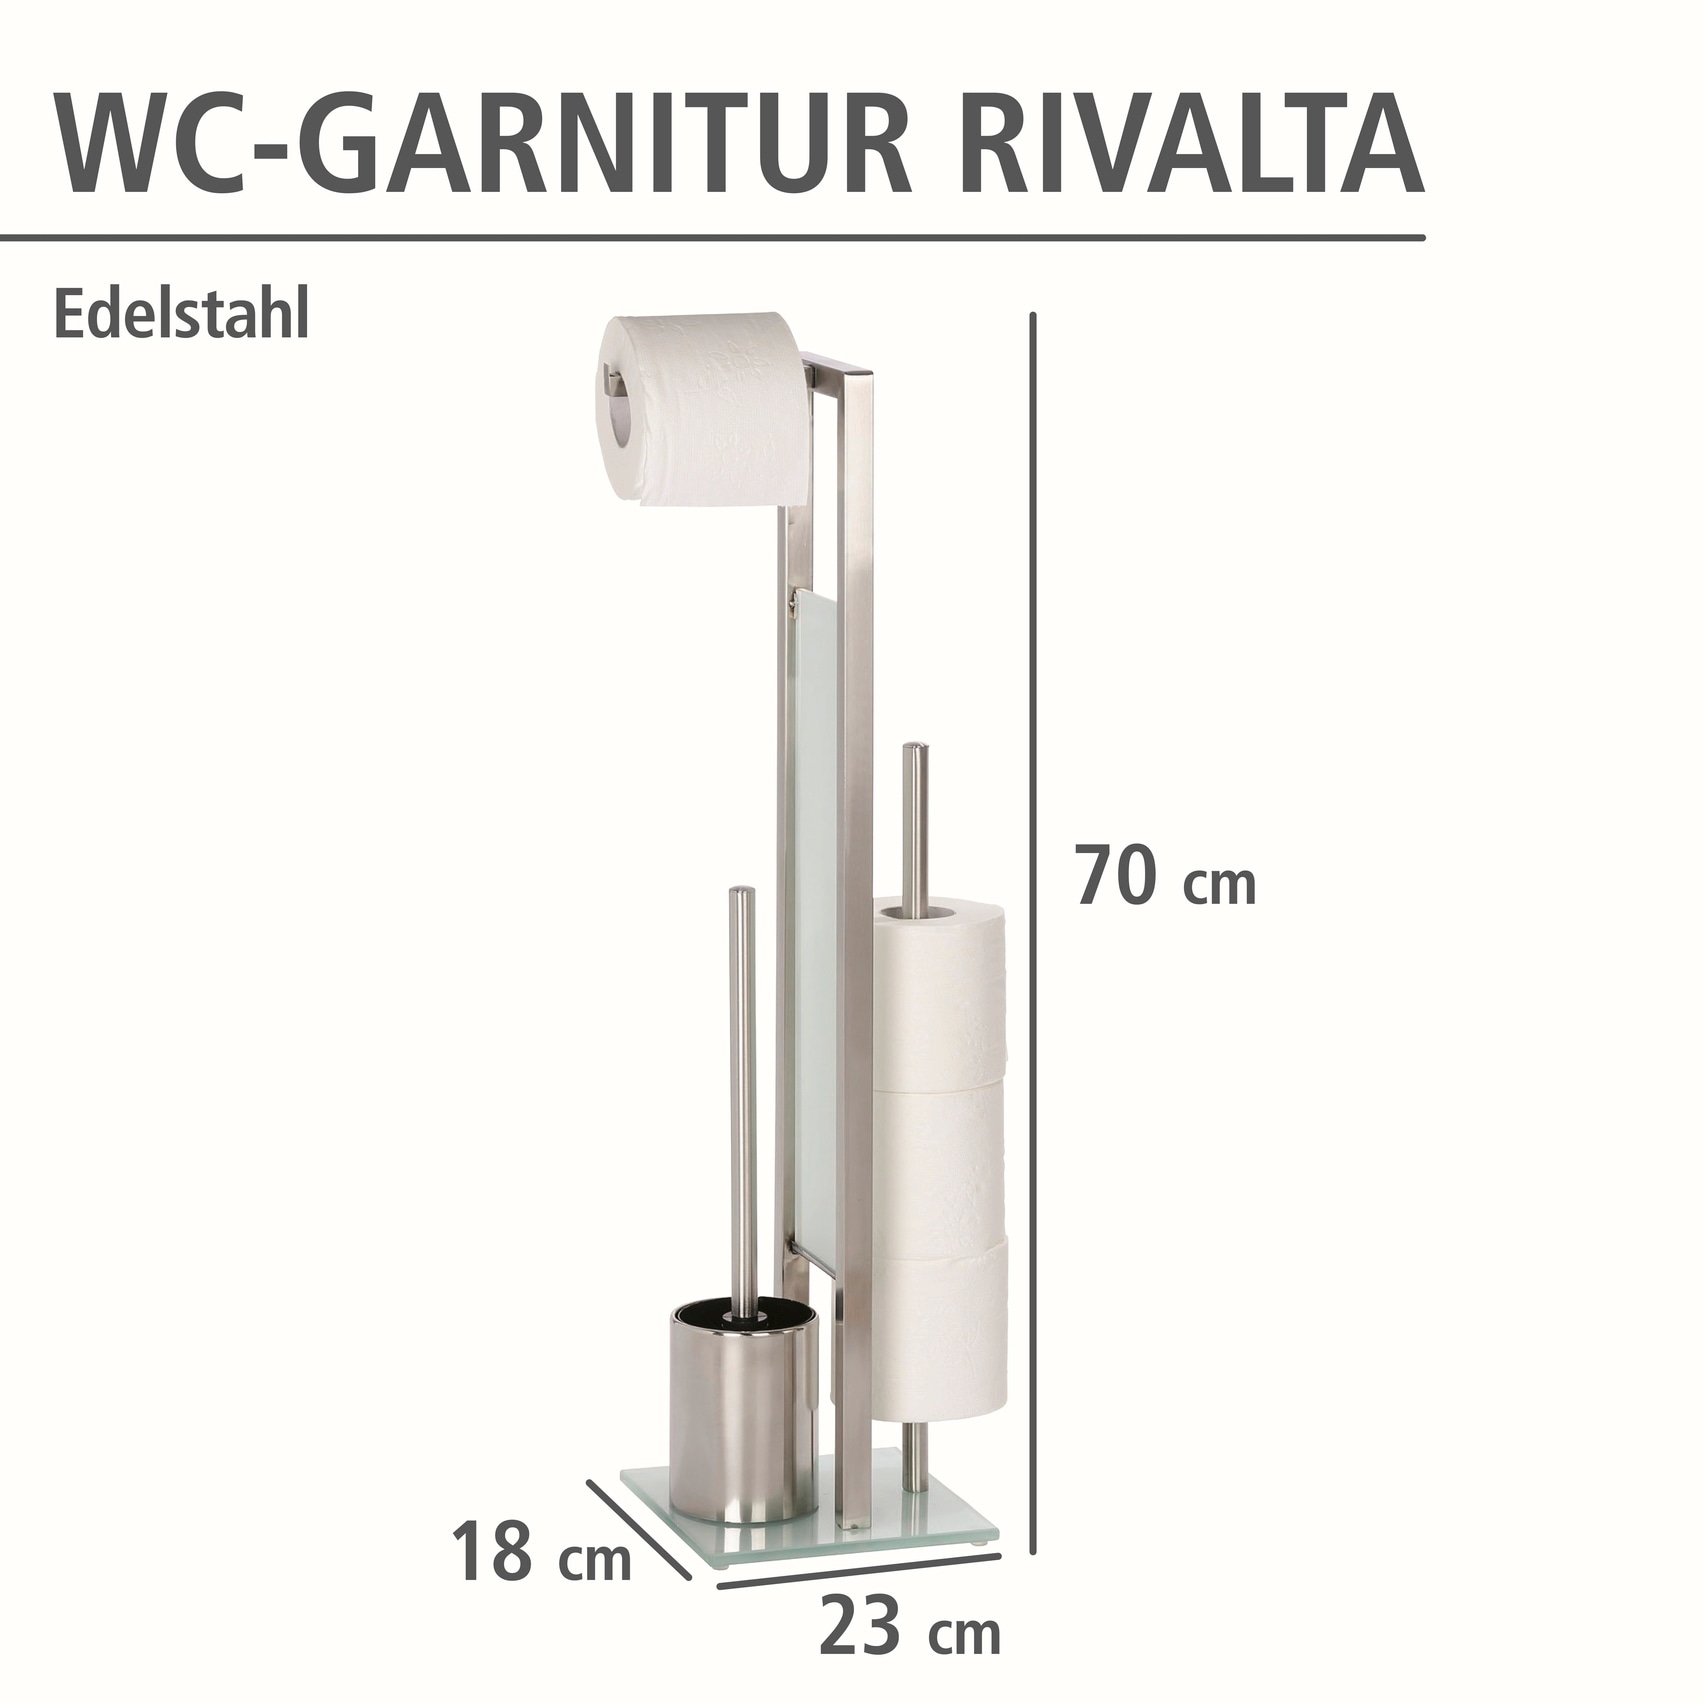 WC-Bürstenhalter OTTO Online integrierter und im Toilettenpapierhalter Shop »Rivalta«, aus WC-Garnitur WENKO Edelstahl,